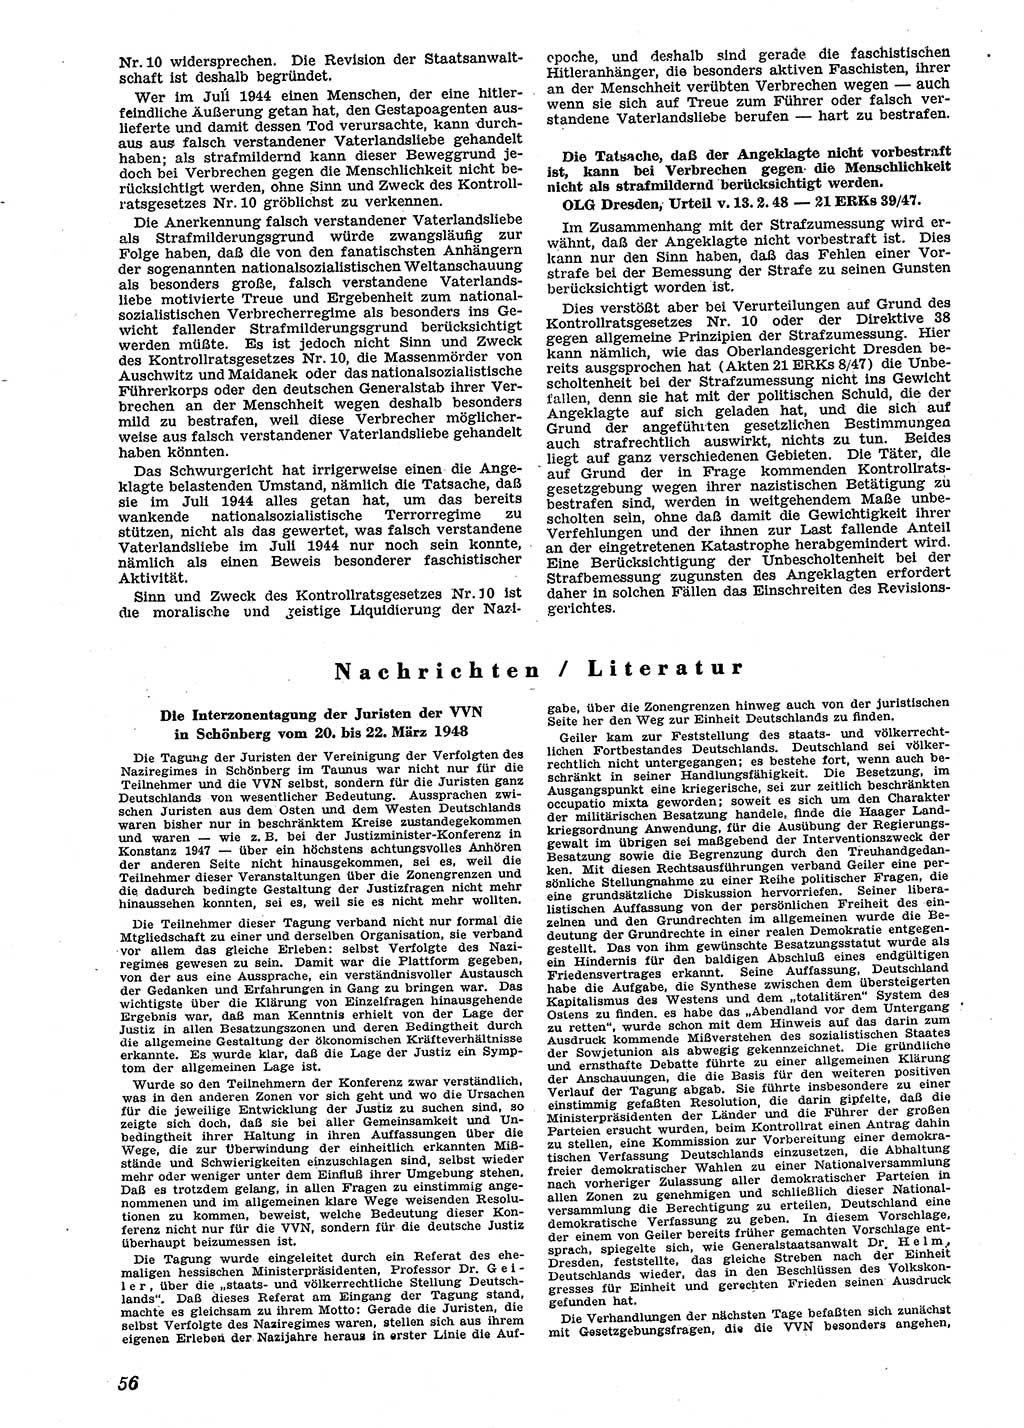 Neue Justiz (NJ), Zeitschrift für Recht und Rechtswissenschaft [Sowjetische Besatzungszone (SBZ) Deutschland], 2. Jahrgang 1948, Seite 56 (NJ SBZ Dtl. 1948, S. 56)